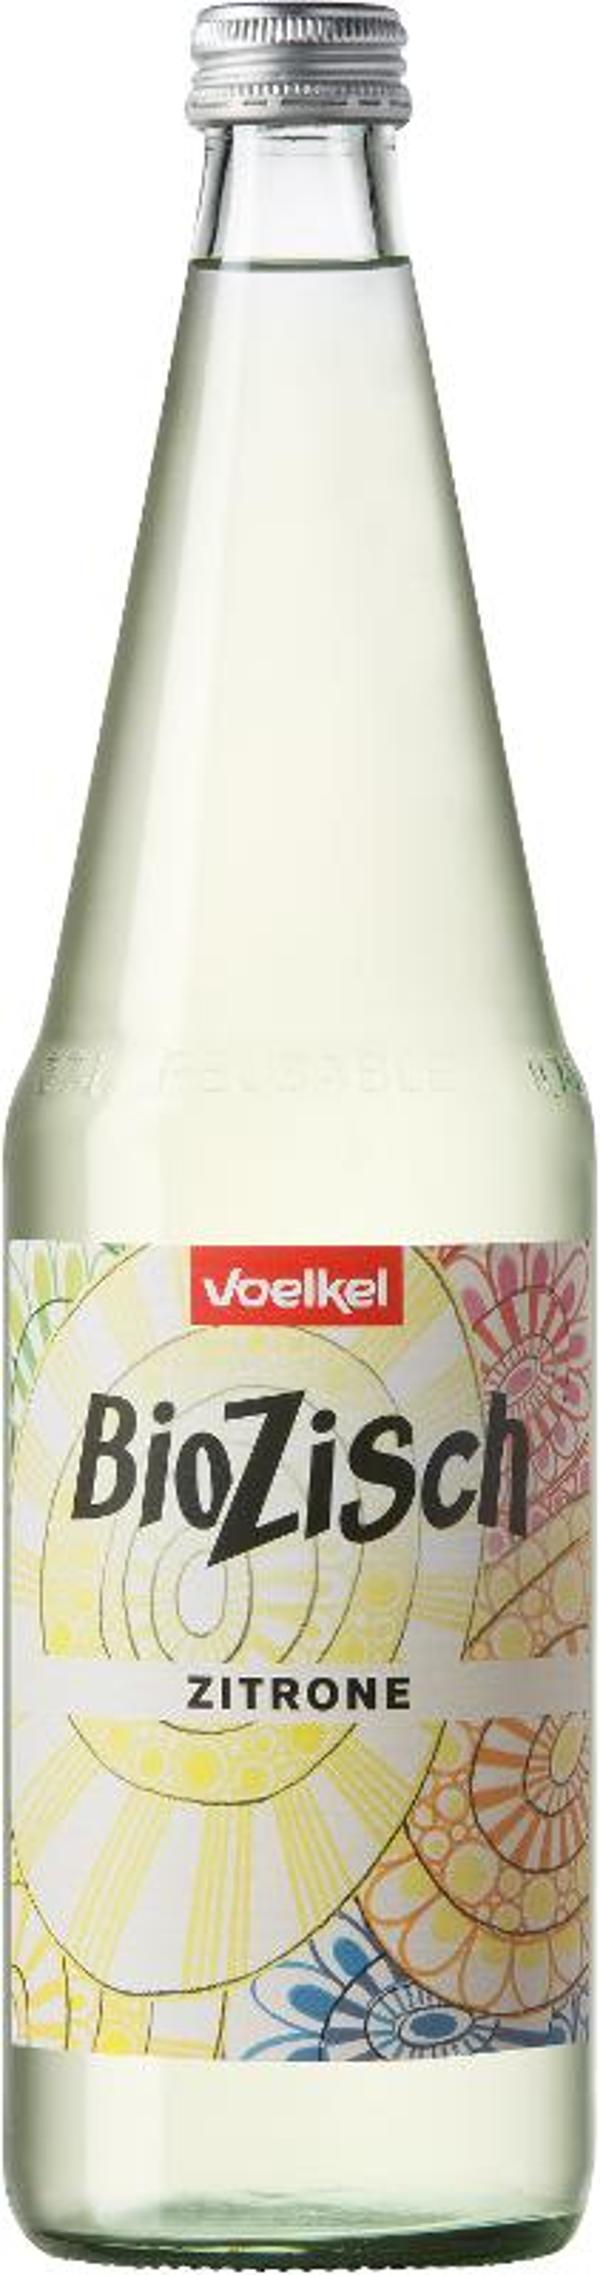 Produktfoto zu BioZisch Zitrone 0,7l Flasche